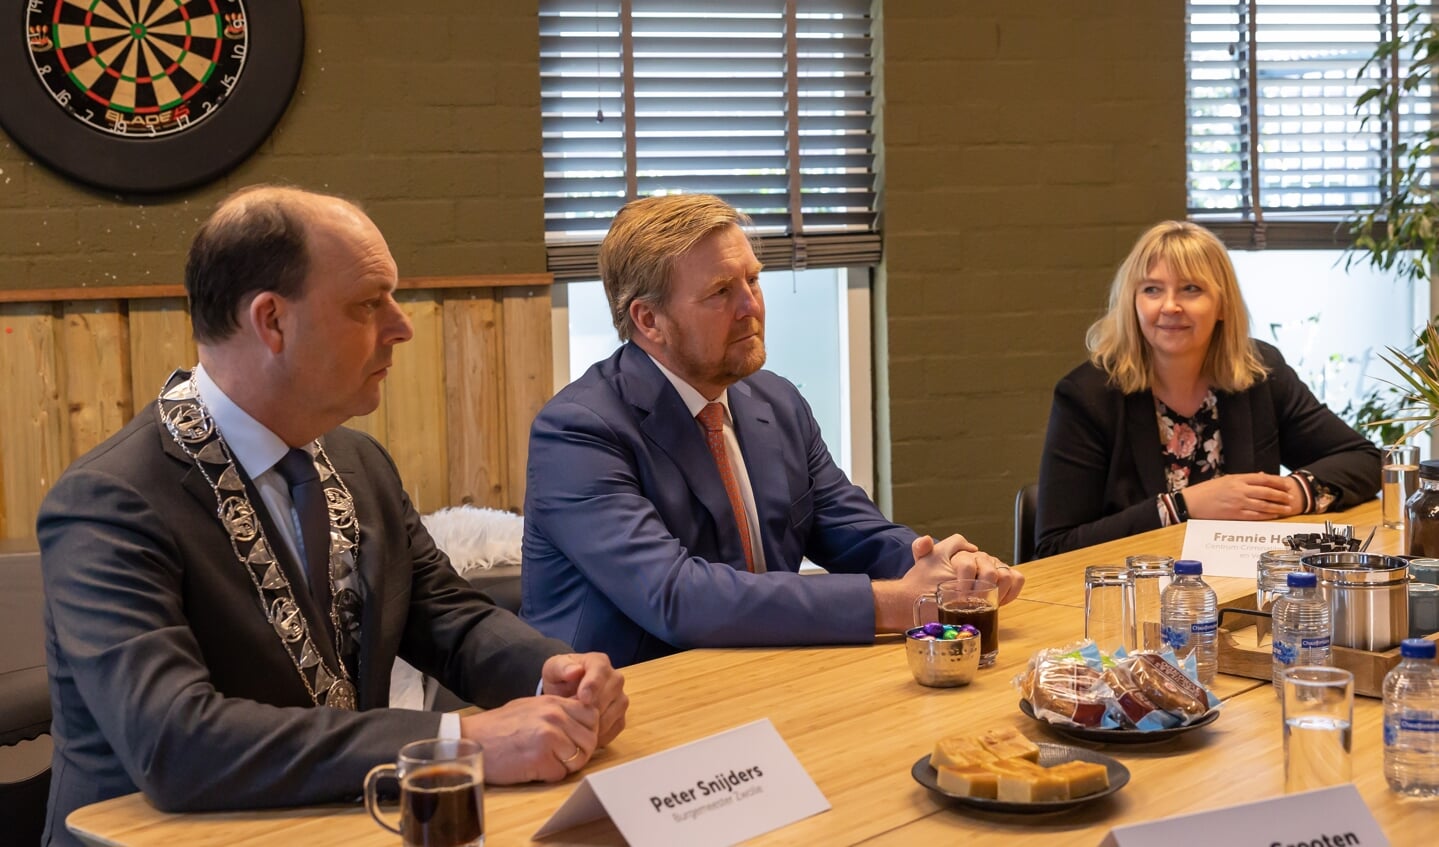 Koning Willem-Alexander spreekt in Zwolle met betrokkenen en organisaties over 25 jaar ervaring met buurtbemiddeling. 